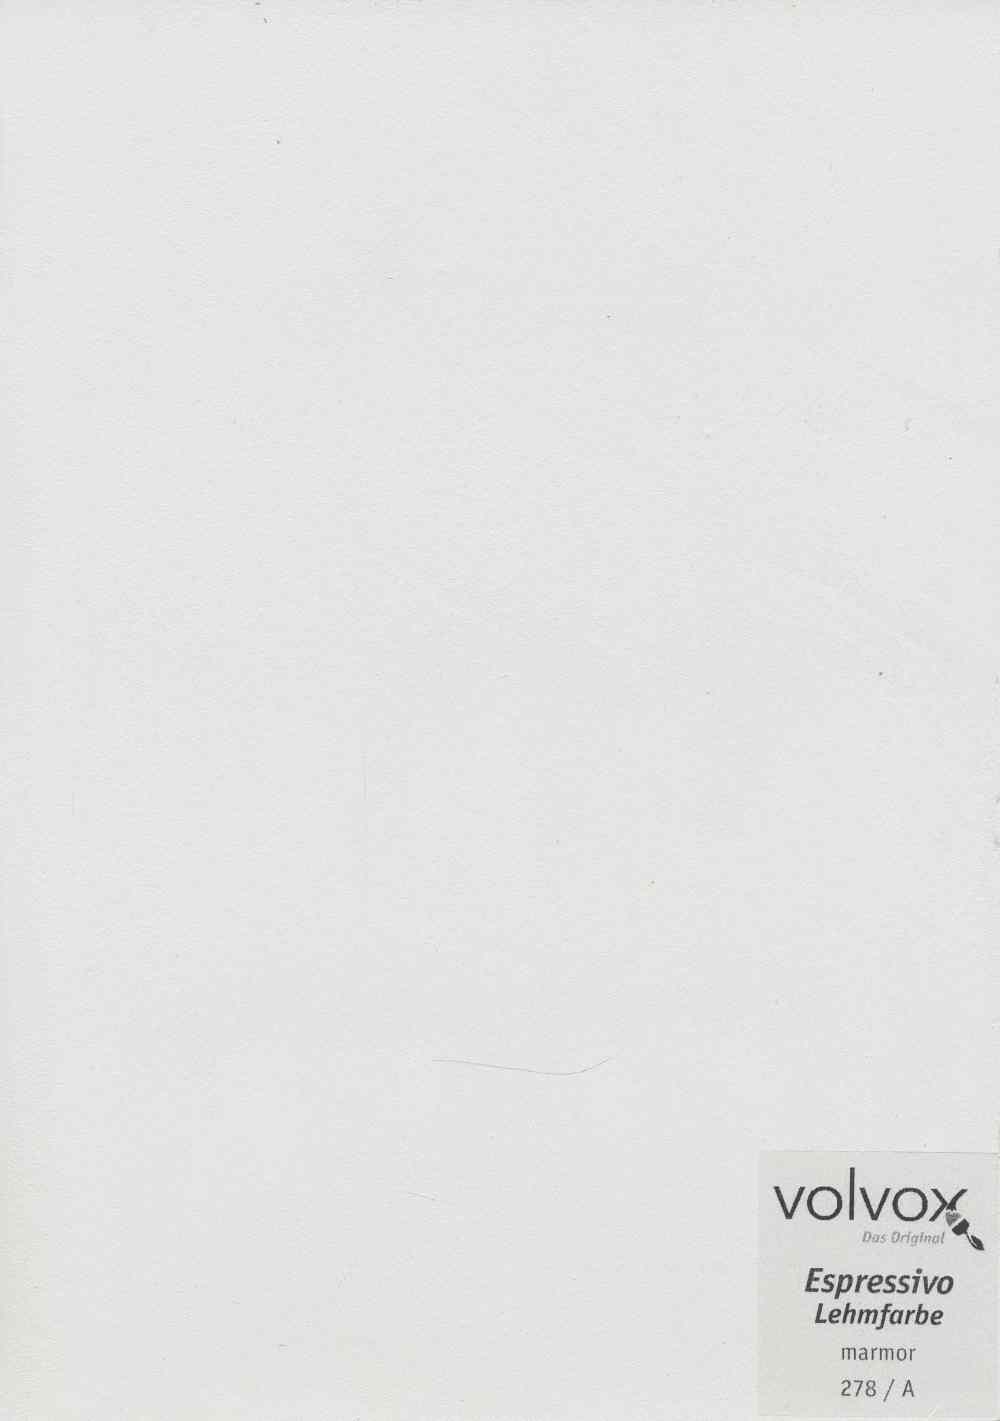 Volvox Espressivo Lehmfarbe 278 marmor